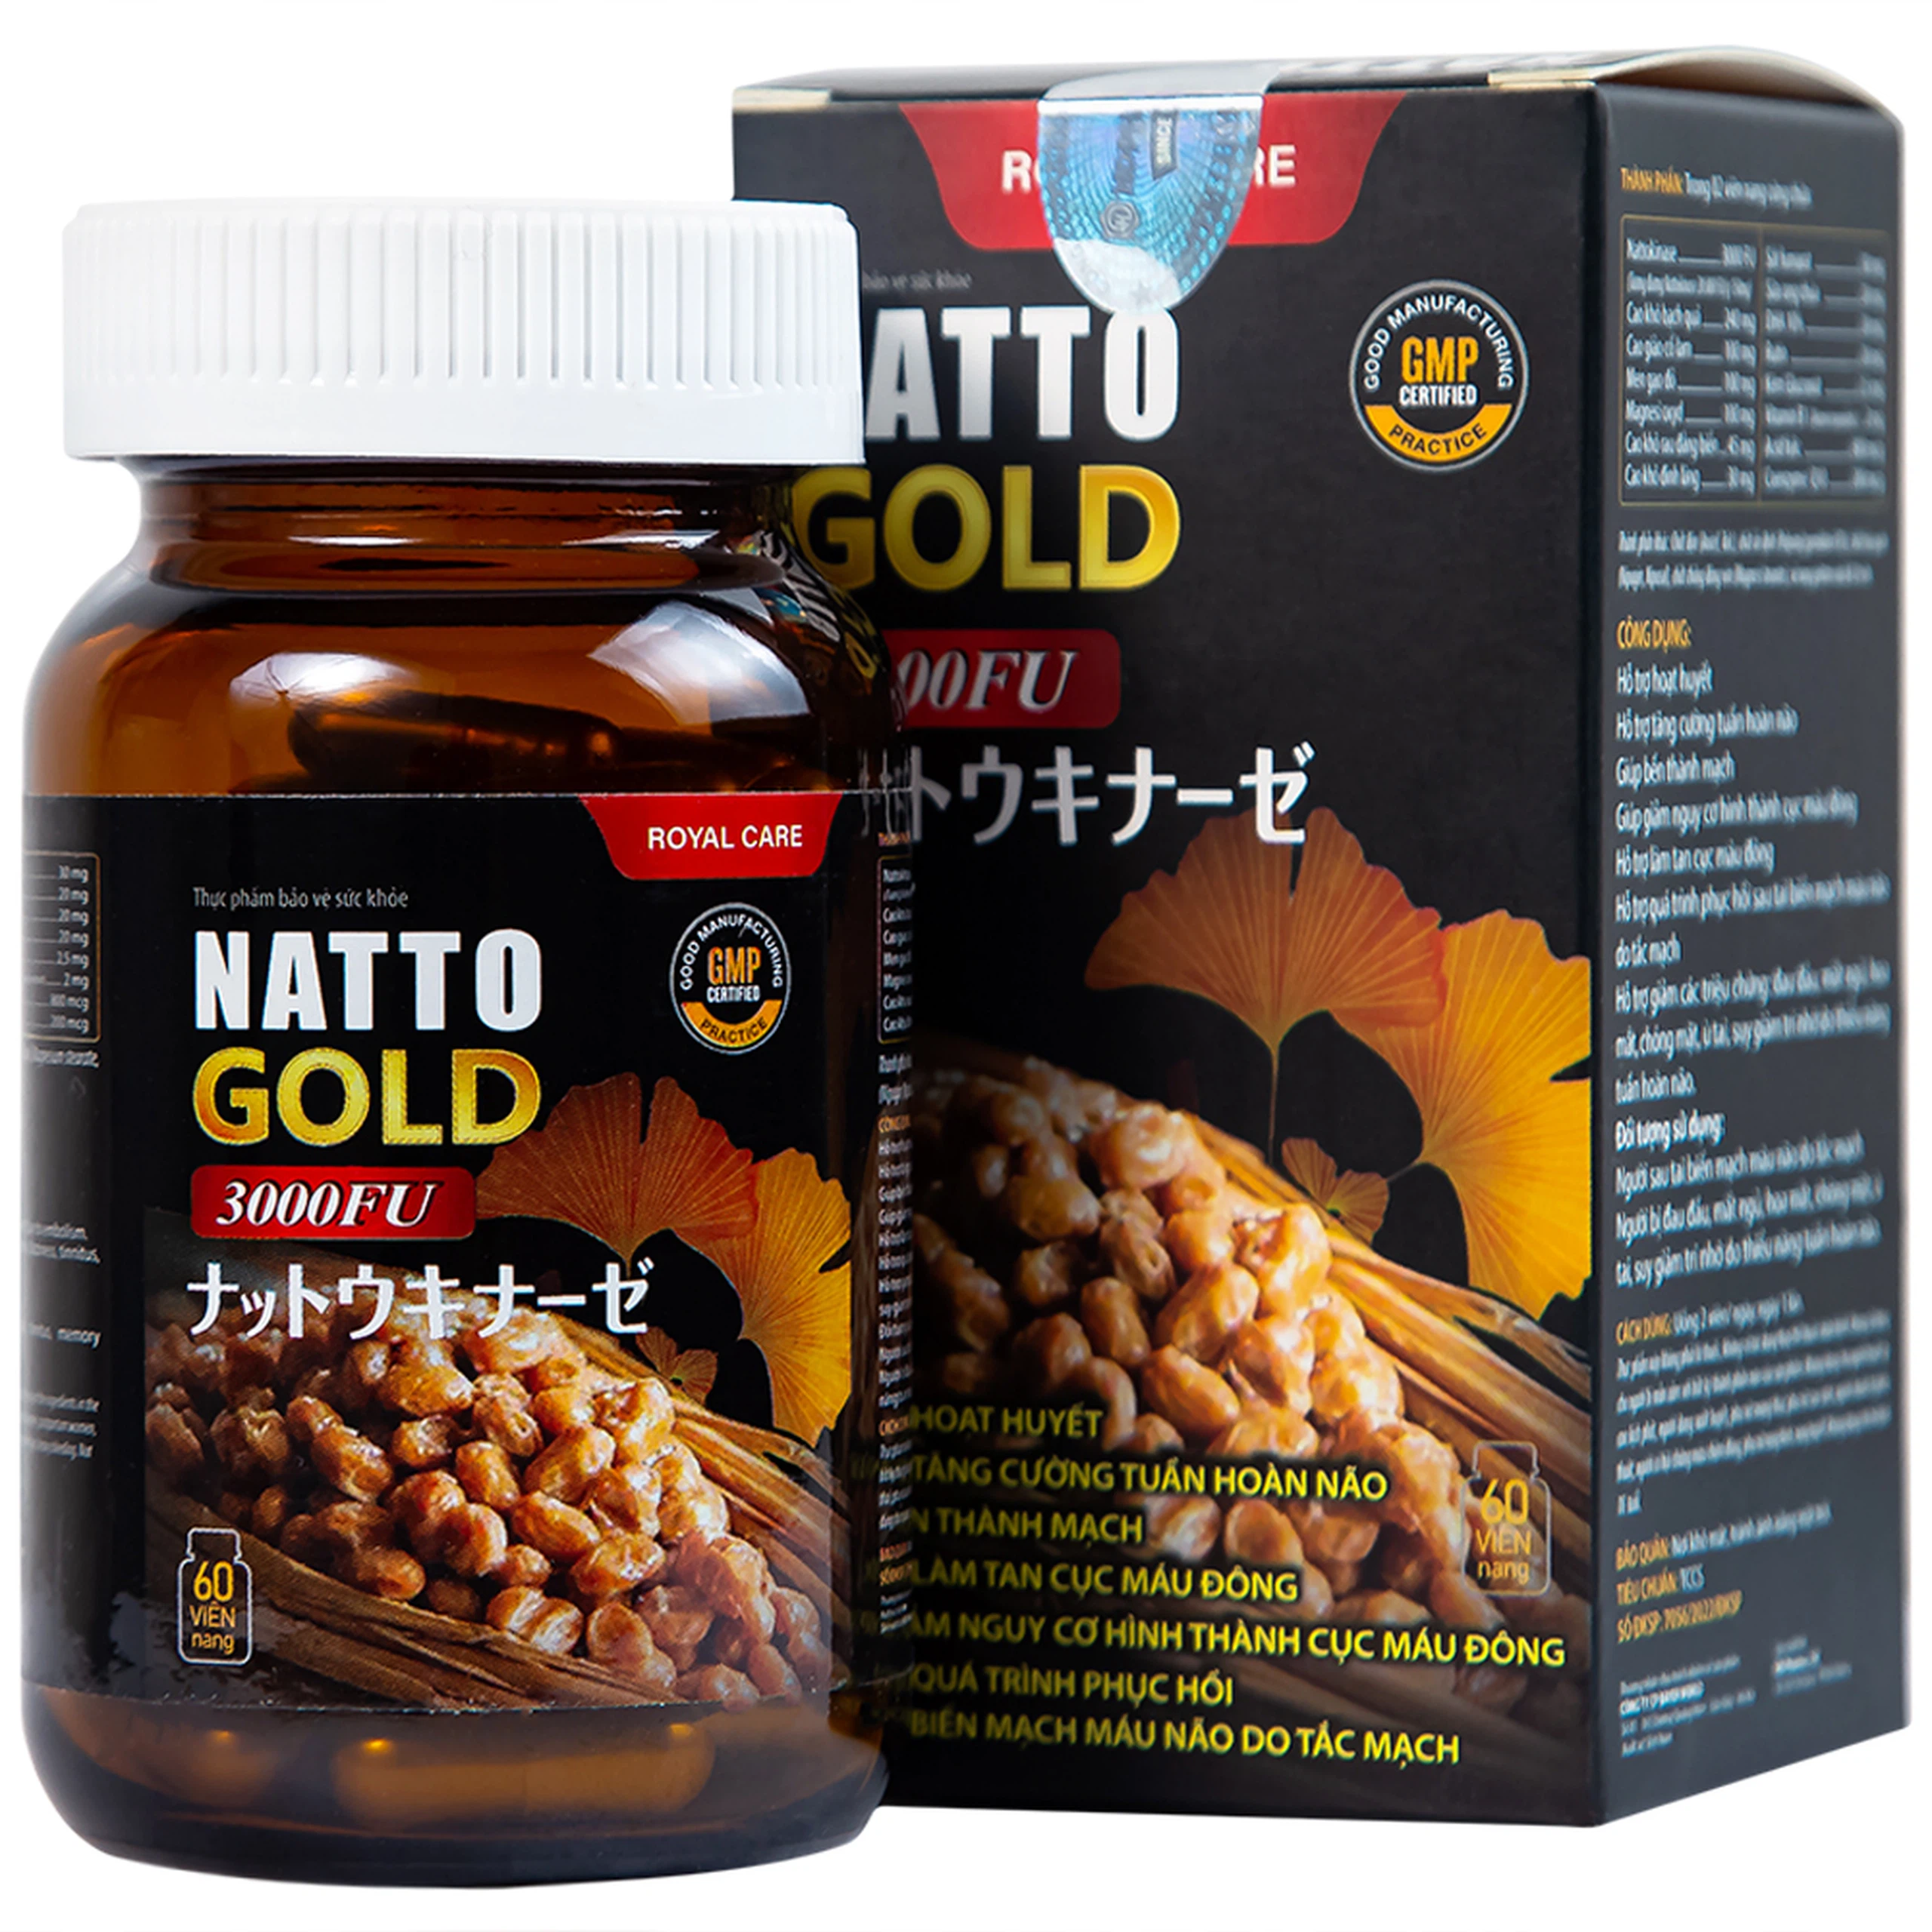 Viên uống Natto Gold 3000FU Royal Care hỗ trợ hoạt huyết, tăng cường tuần hoàn não (60 viên)